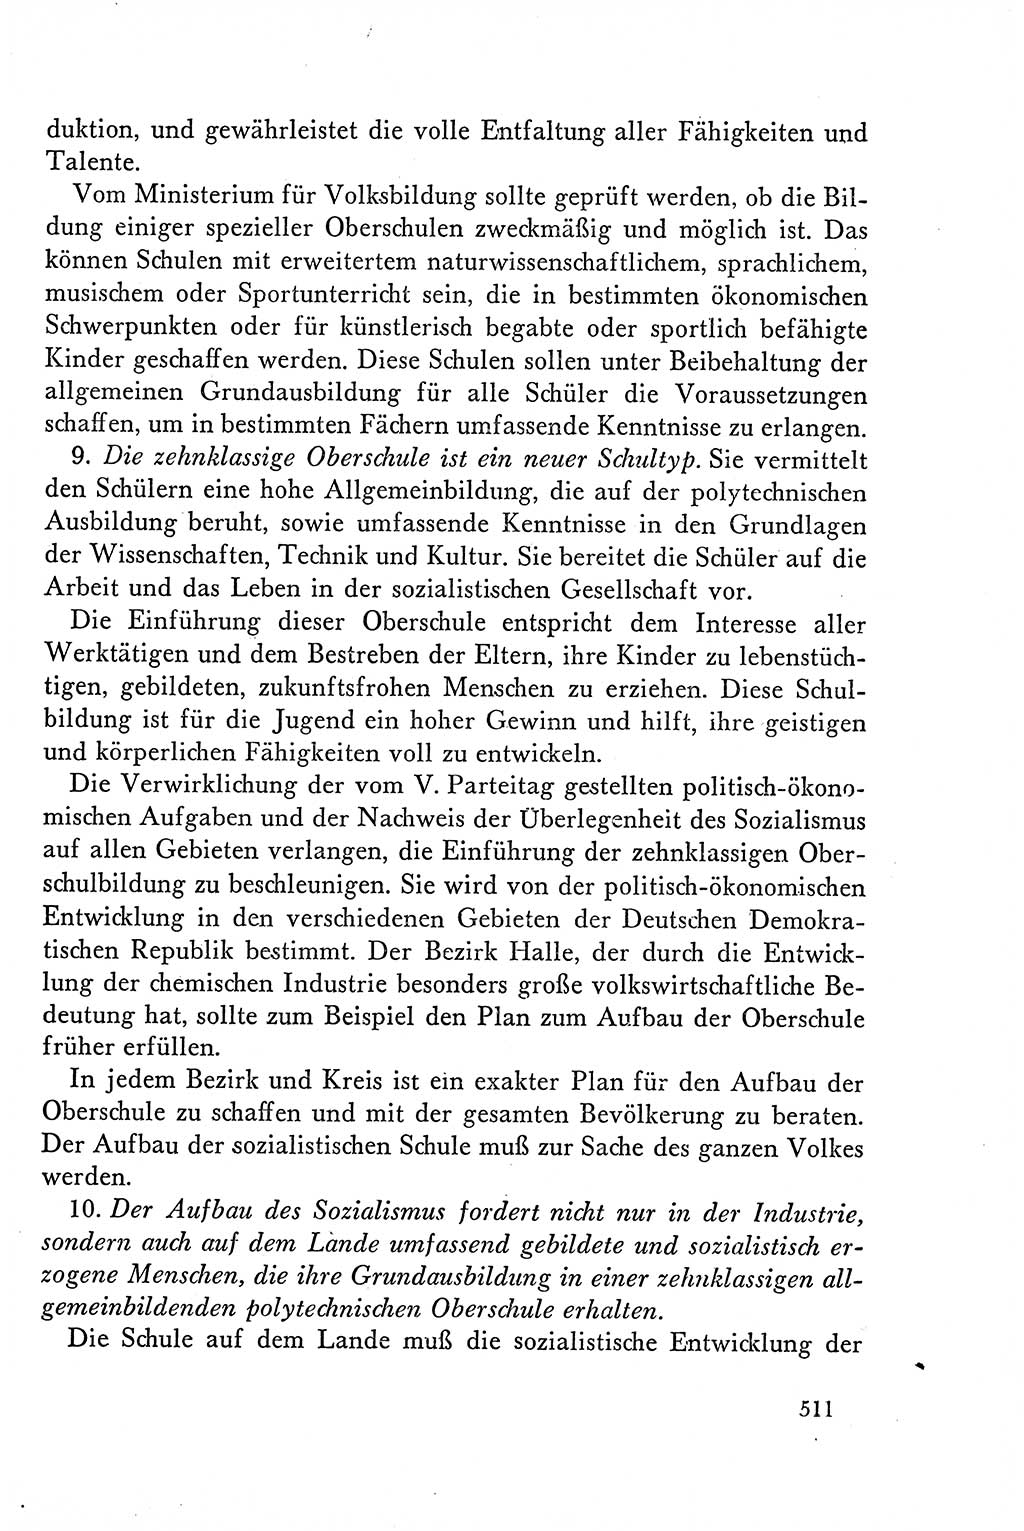 Dokumente der Sozialistischen Einheitspartei Deutschlands (SED) [Deutsche Demokratische Republik (DDR)] 1958-1959, Seite 511 (Dok. SED DDR 1958-1959, S. 511)